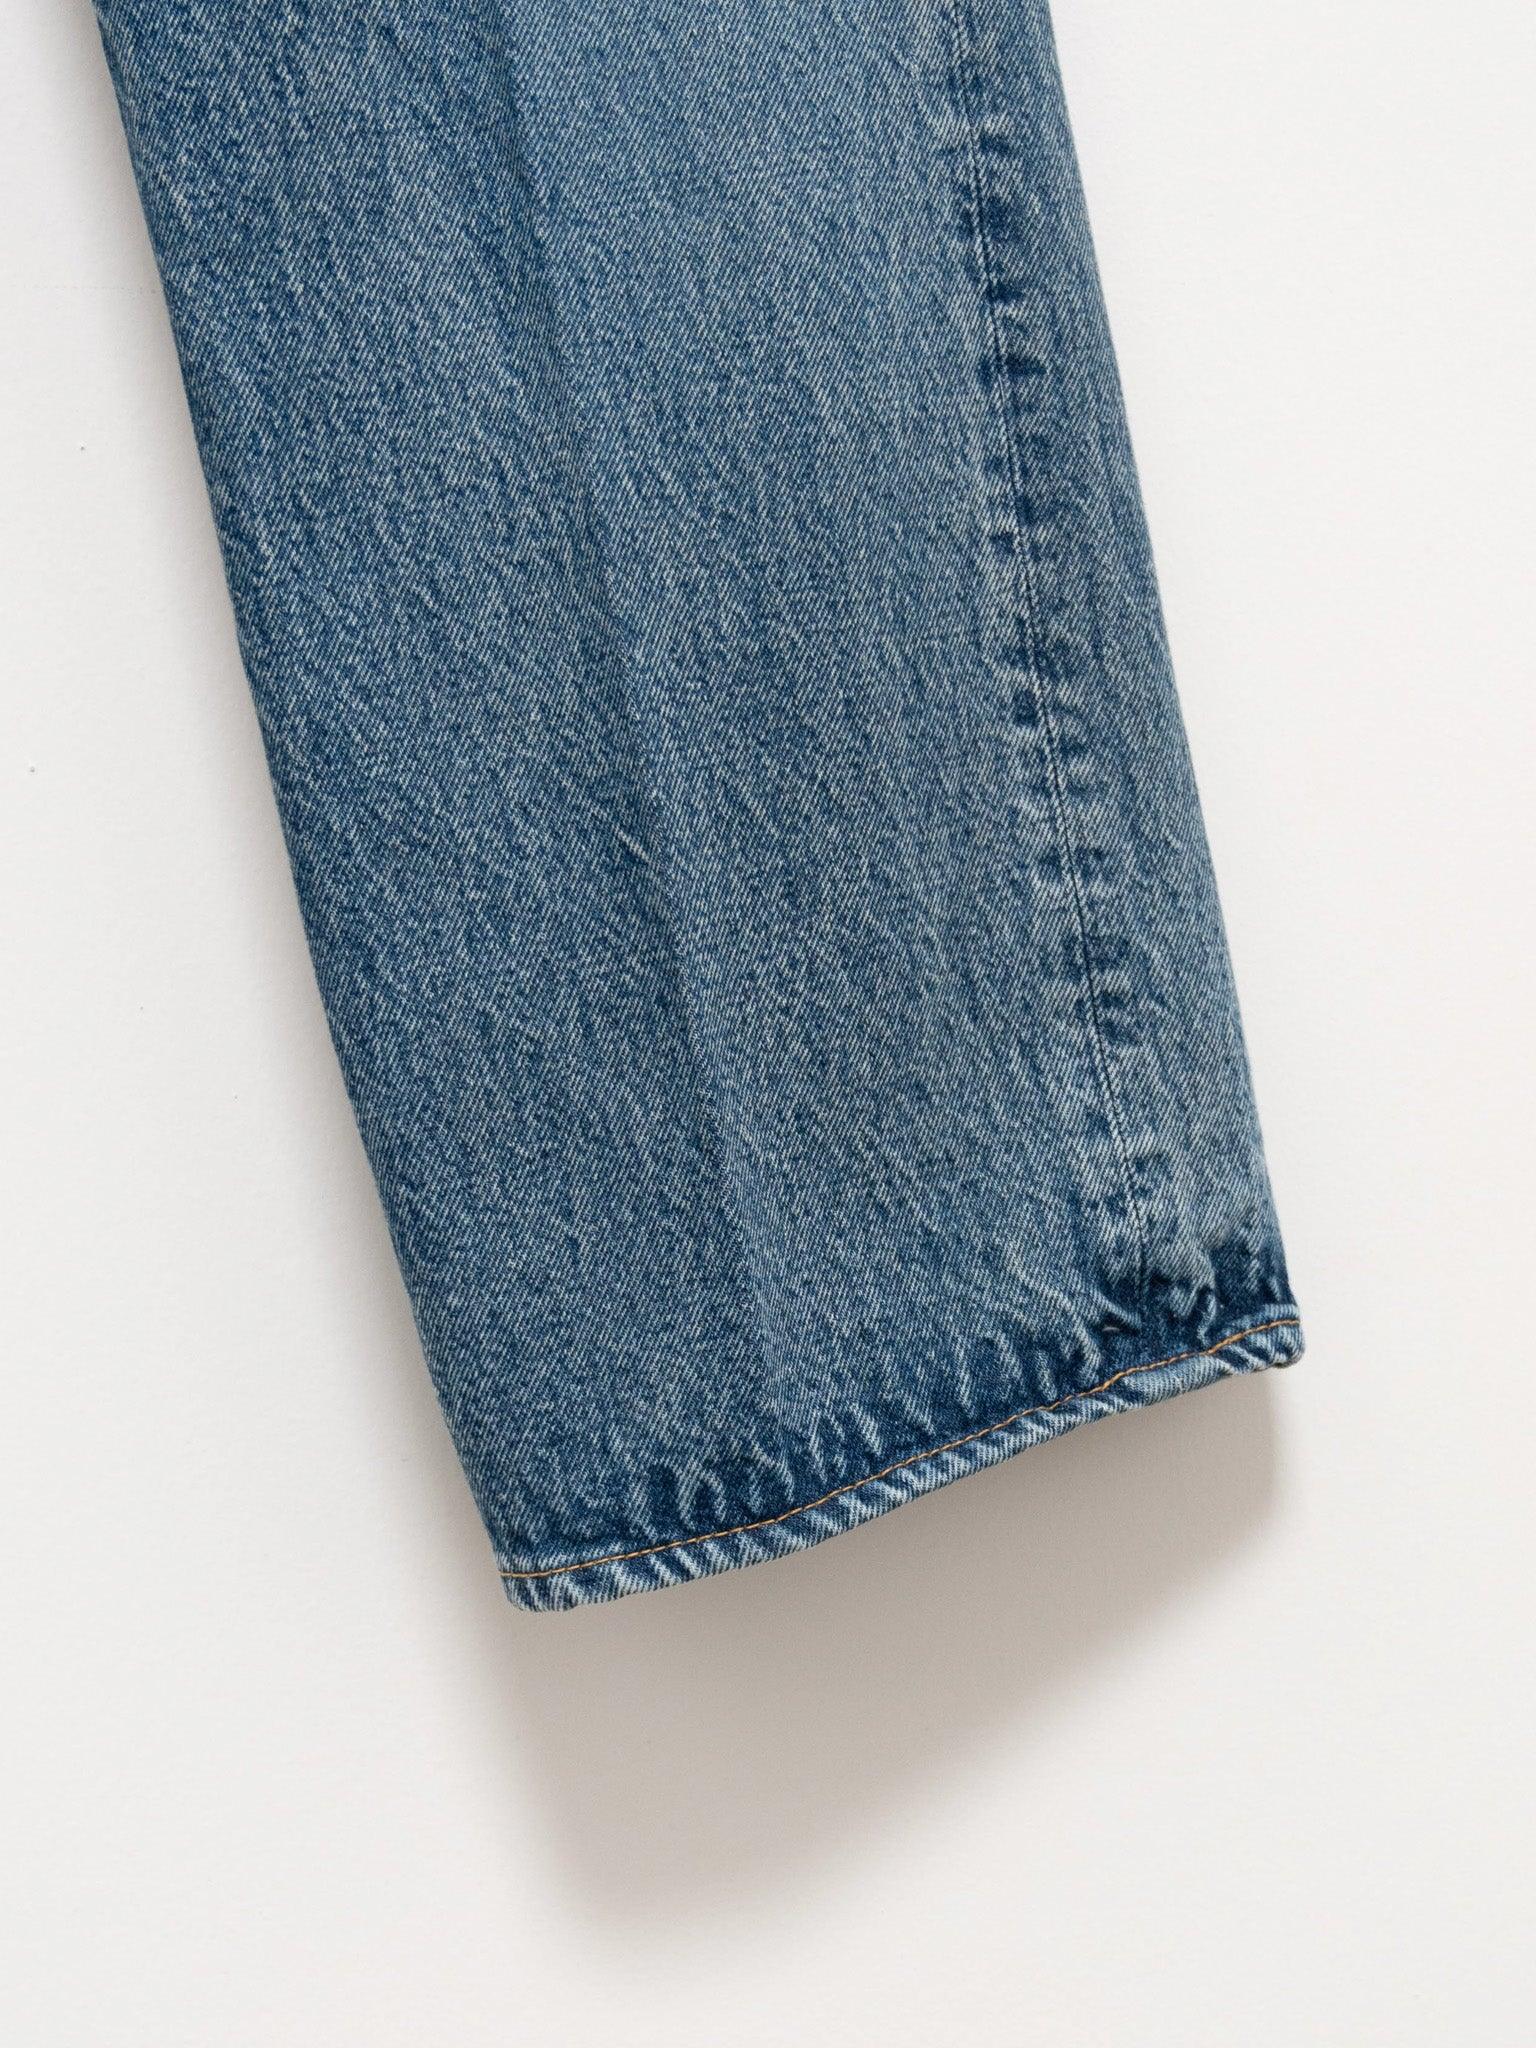 Skateshoe Cut Denim Pants - Indigo Vintage Wash